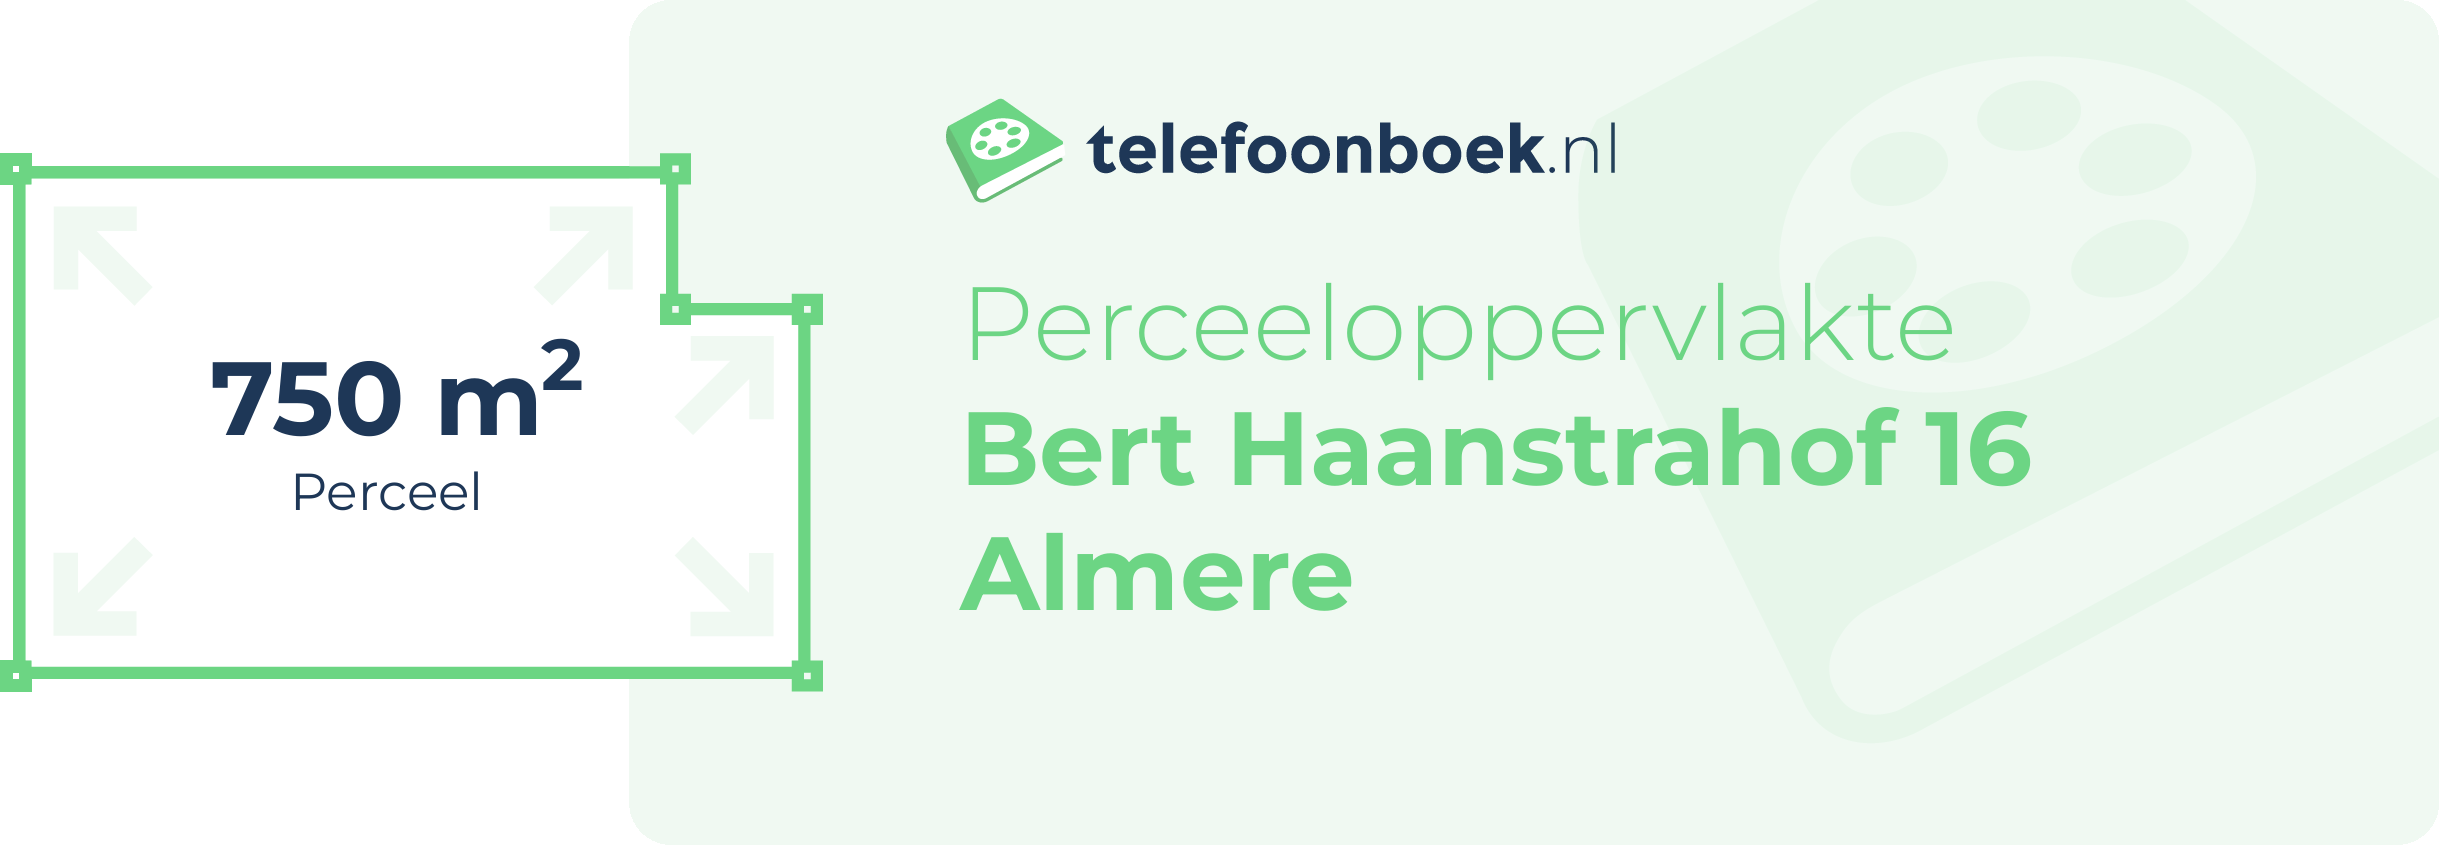 Perceeloppervlakte Bert Haanstrahof 16 Almere